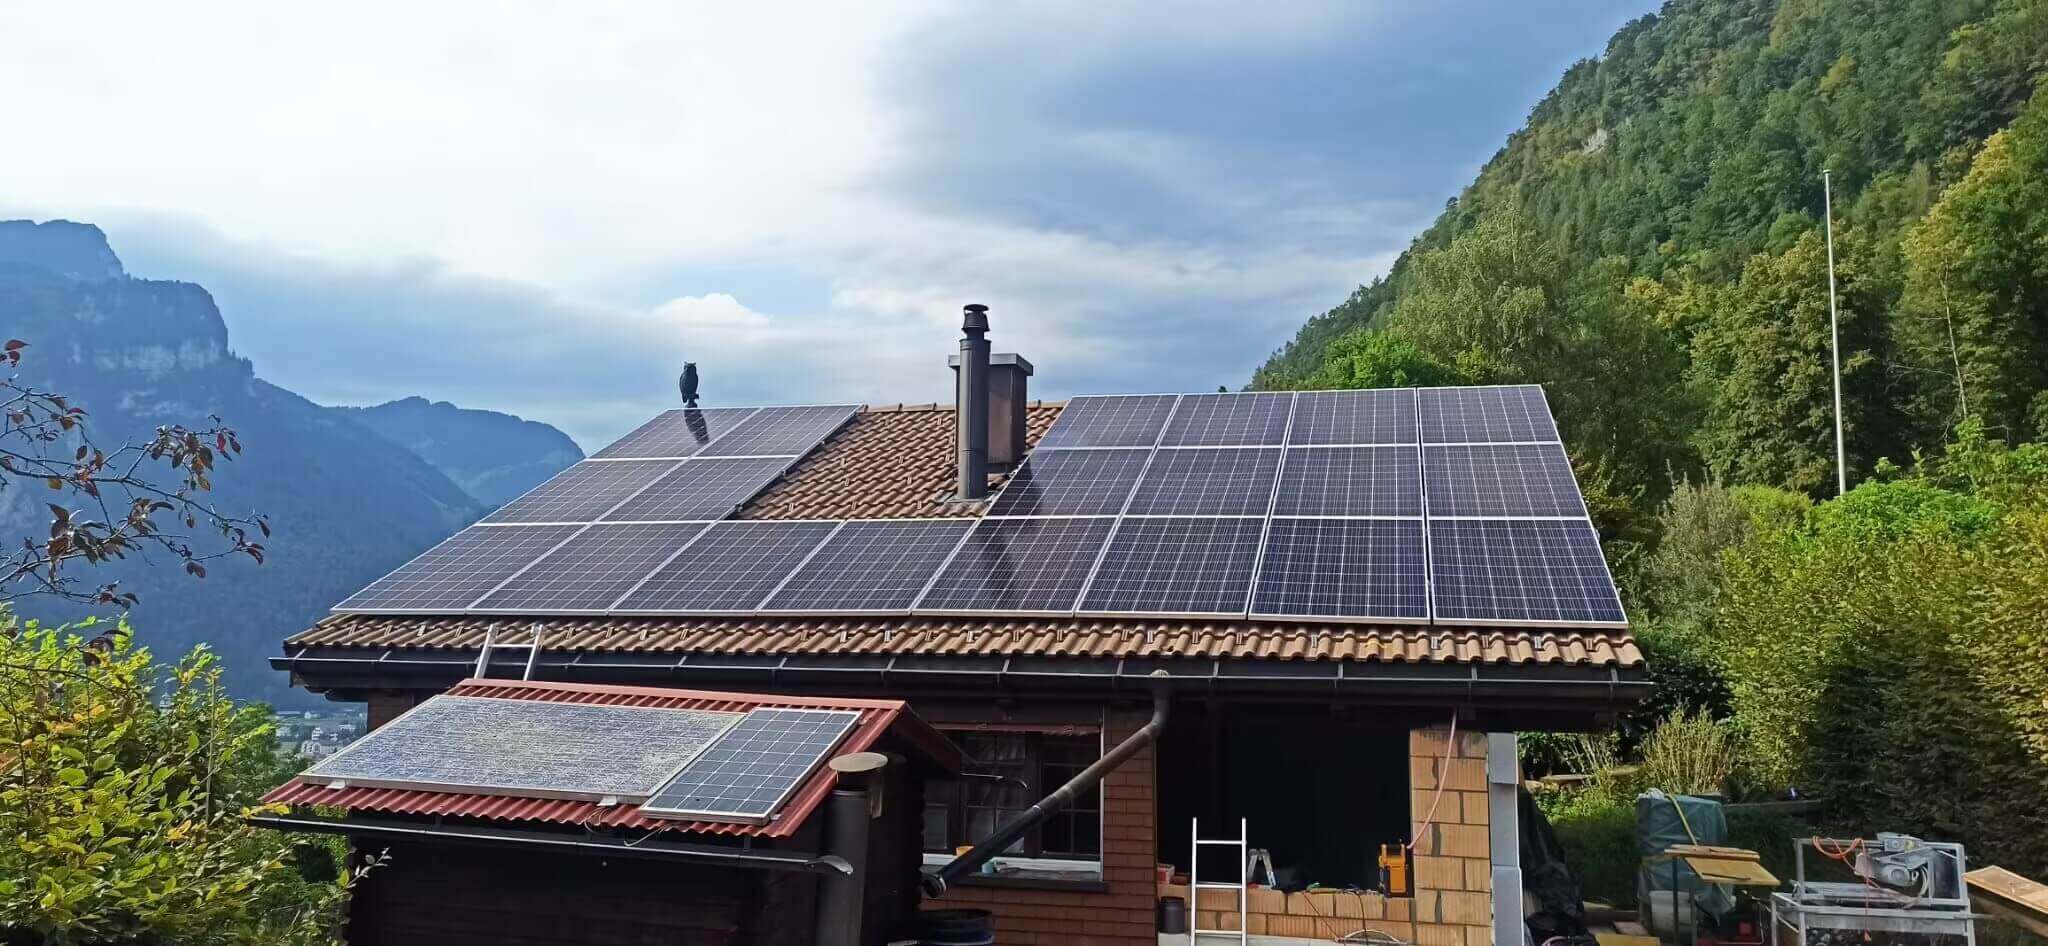 450w Mono Silicon Half-Cut Solar Panels